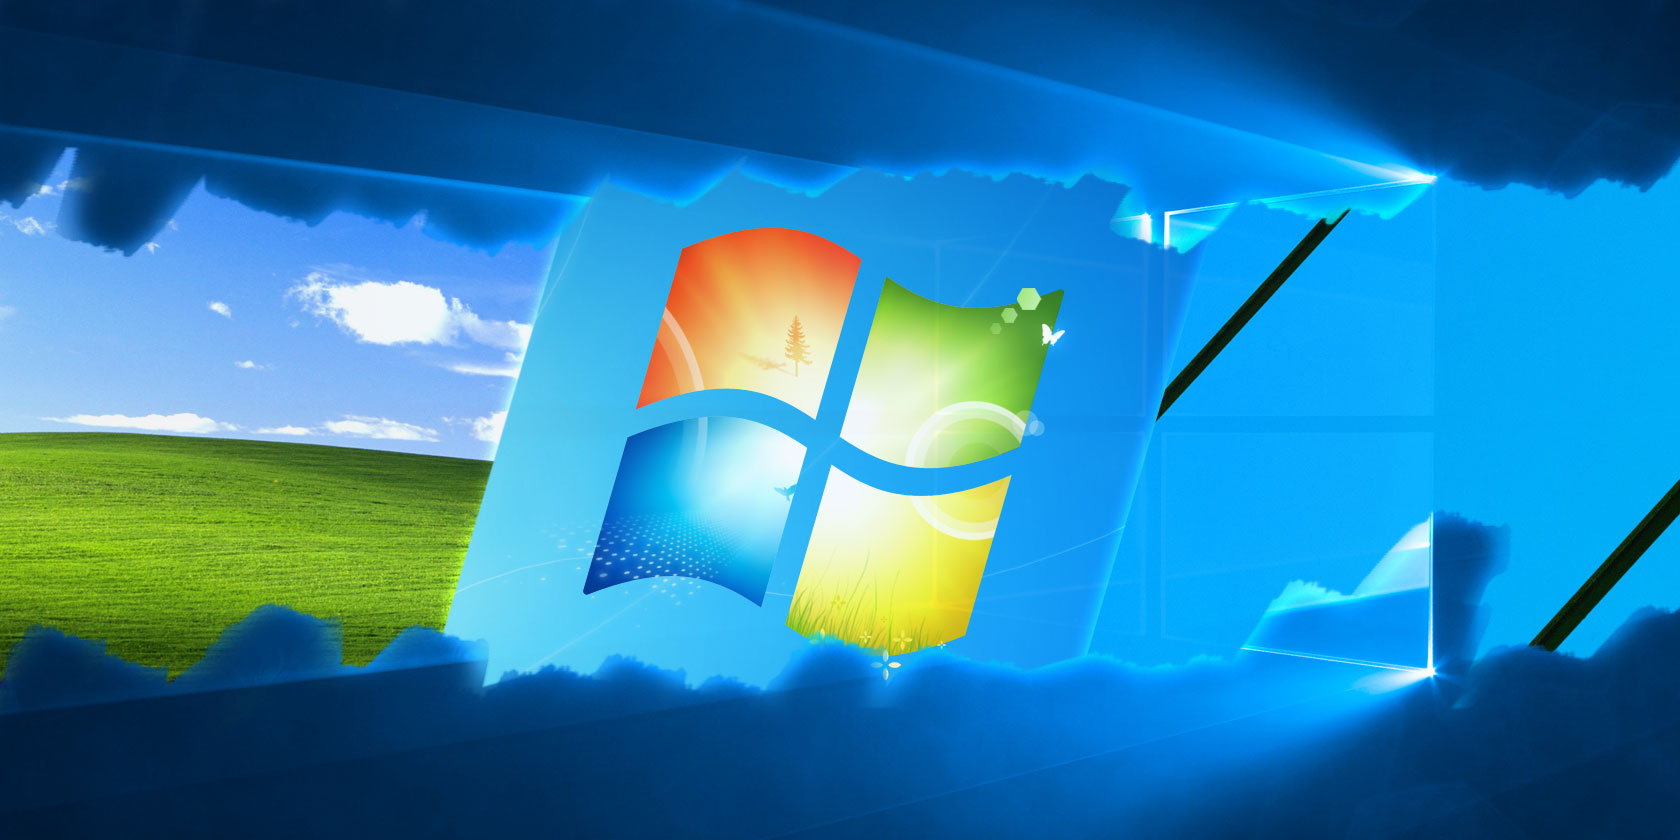 Giao diện Windows XP/7/8.1: Với giao diện máy tính đúng chất của Windows XP/7/8.1, bạn sẽ có cảm giác đổi mới, thú vị khi sử dụng máy tính. Đó là những tính năng đặc trưng mà bạn chỉ có thể tìm thấy khi sử dụng các phiên bản này. Cùng trải nghiệm và khám phá với chúng tôi ngay hôm nay!